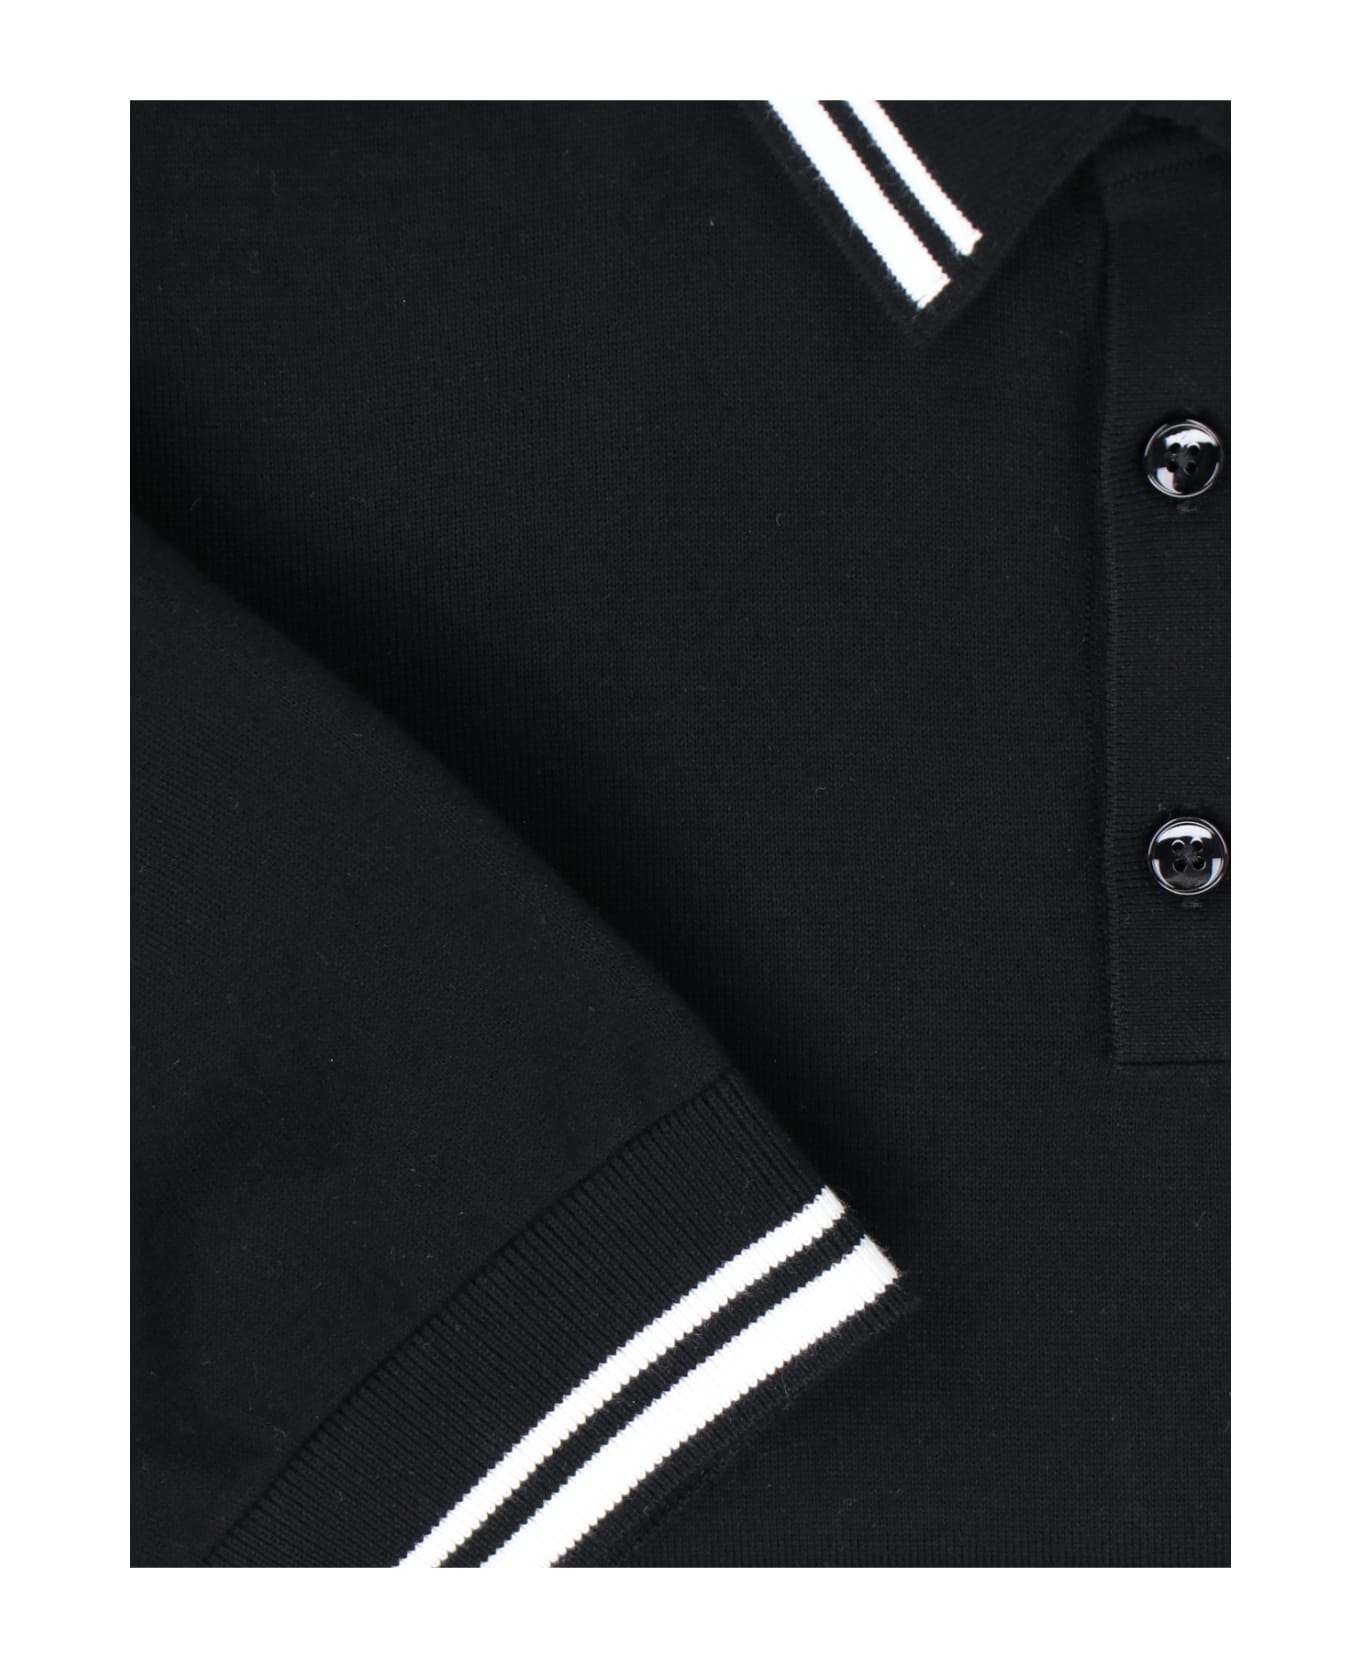 Dolce & Gabbana Logo Polo Shirt - Black  